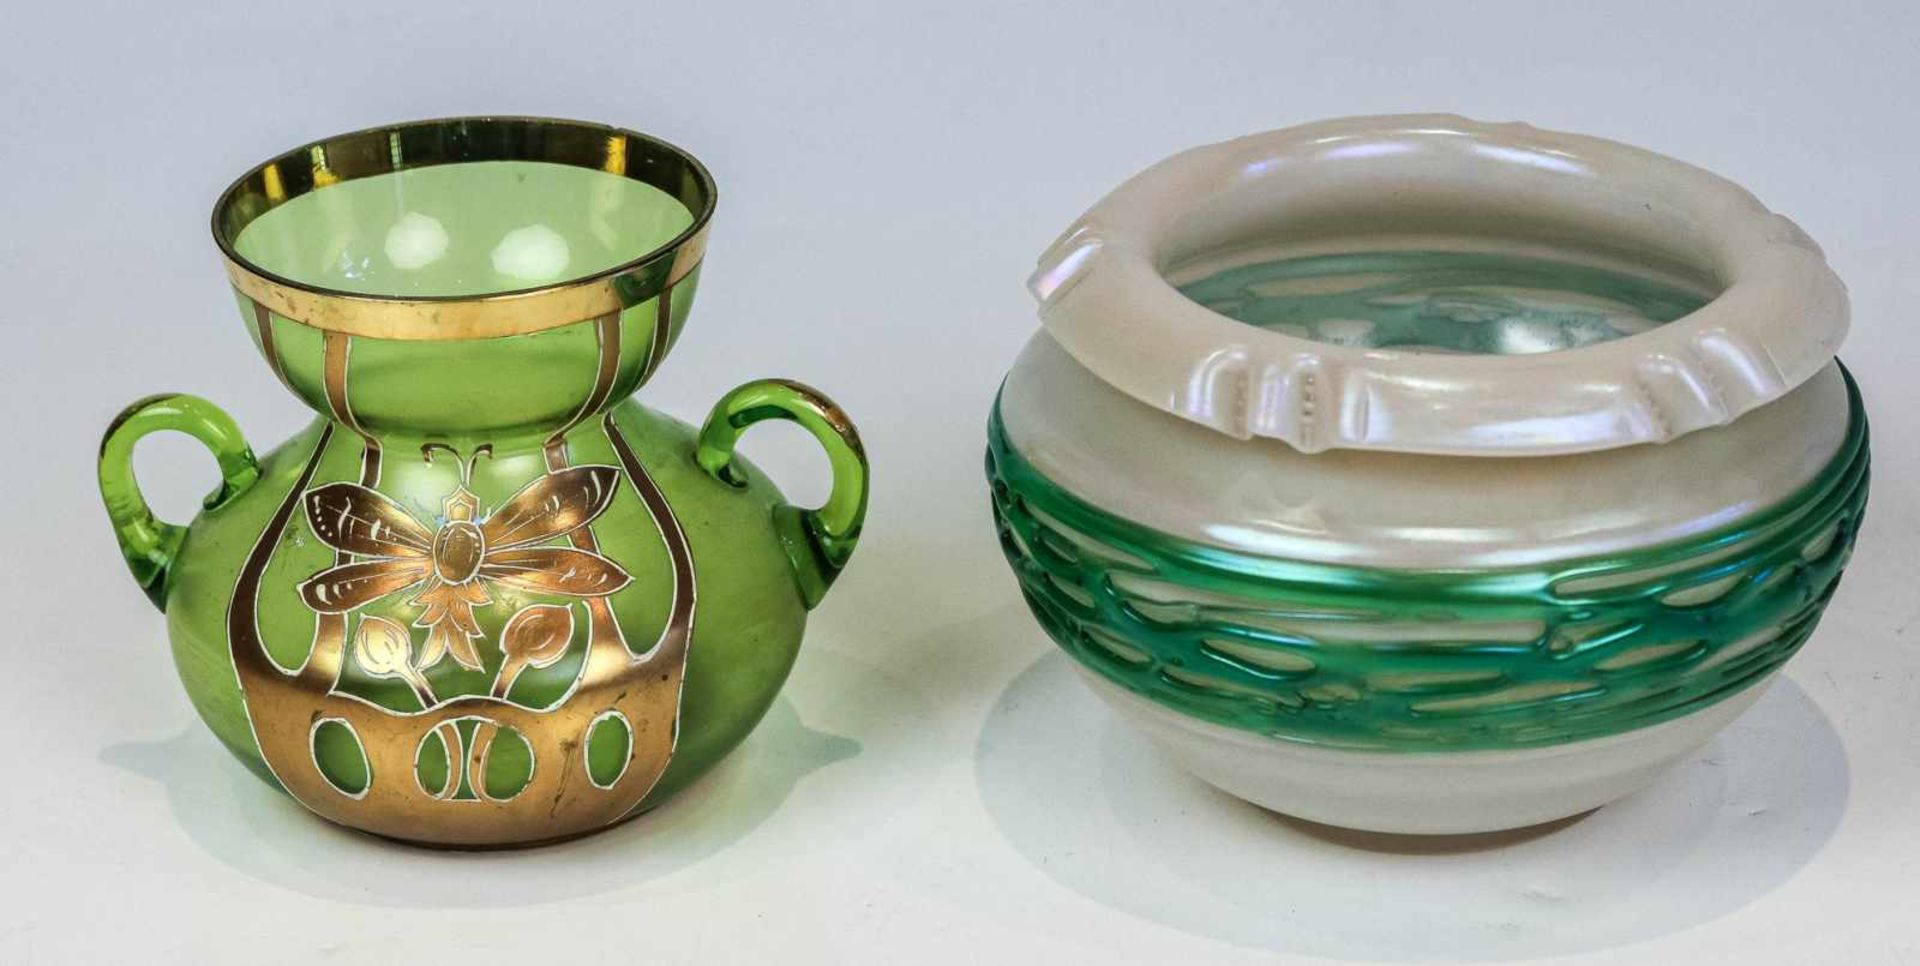 Niedrige Bechervase und DoppelhenkelvaseBöhmen, um 1900/10a) Farbloses, opalweiß unterfangenes Glas,